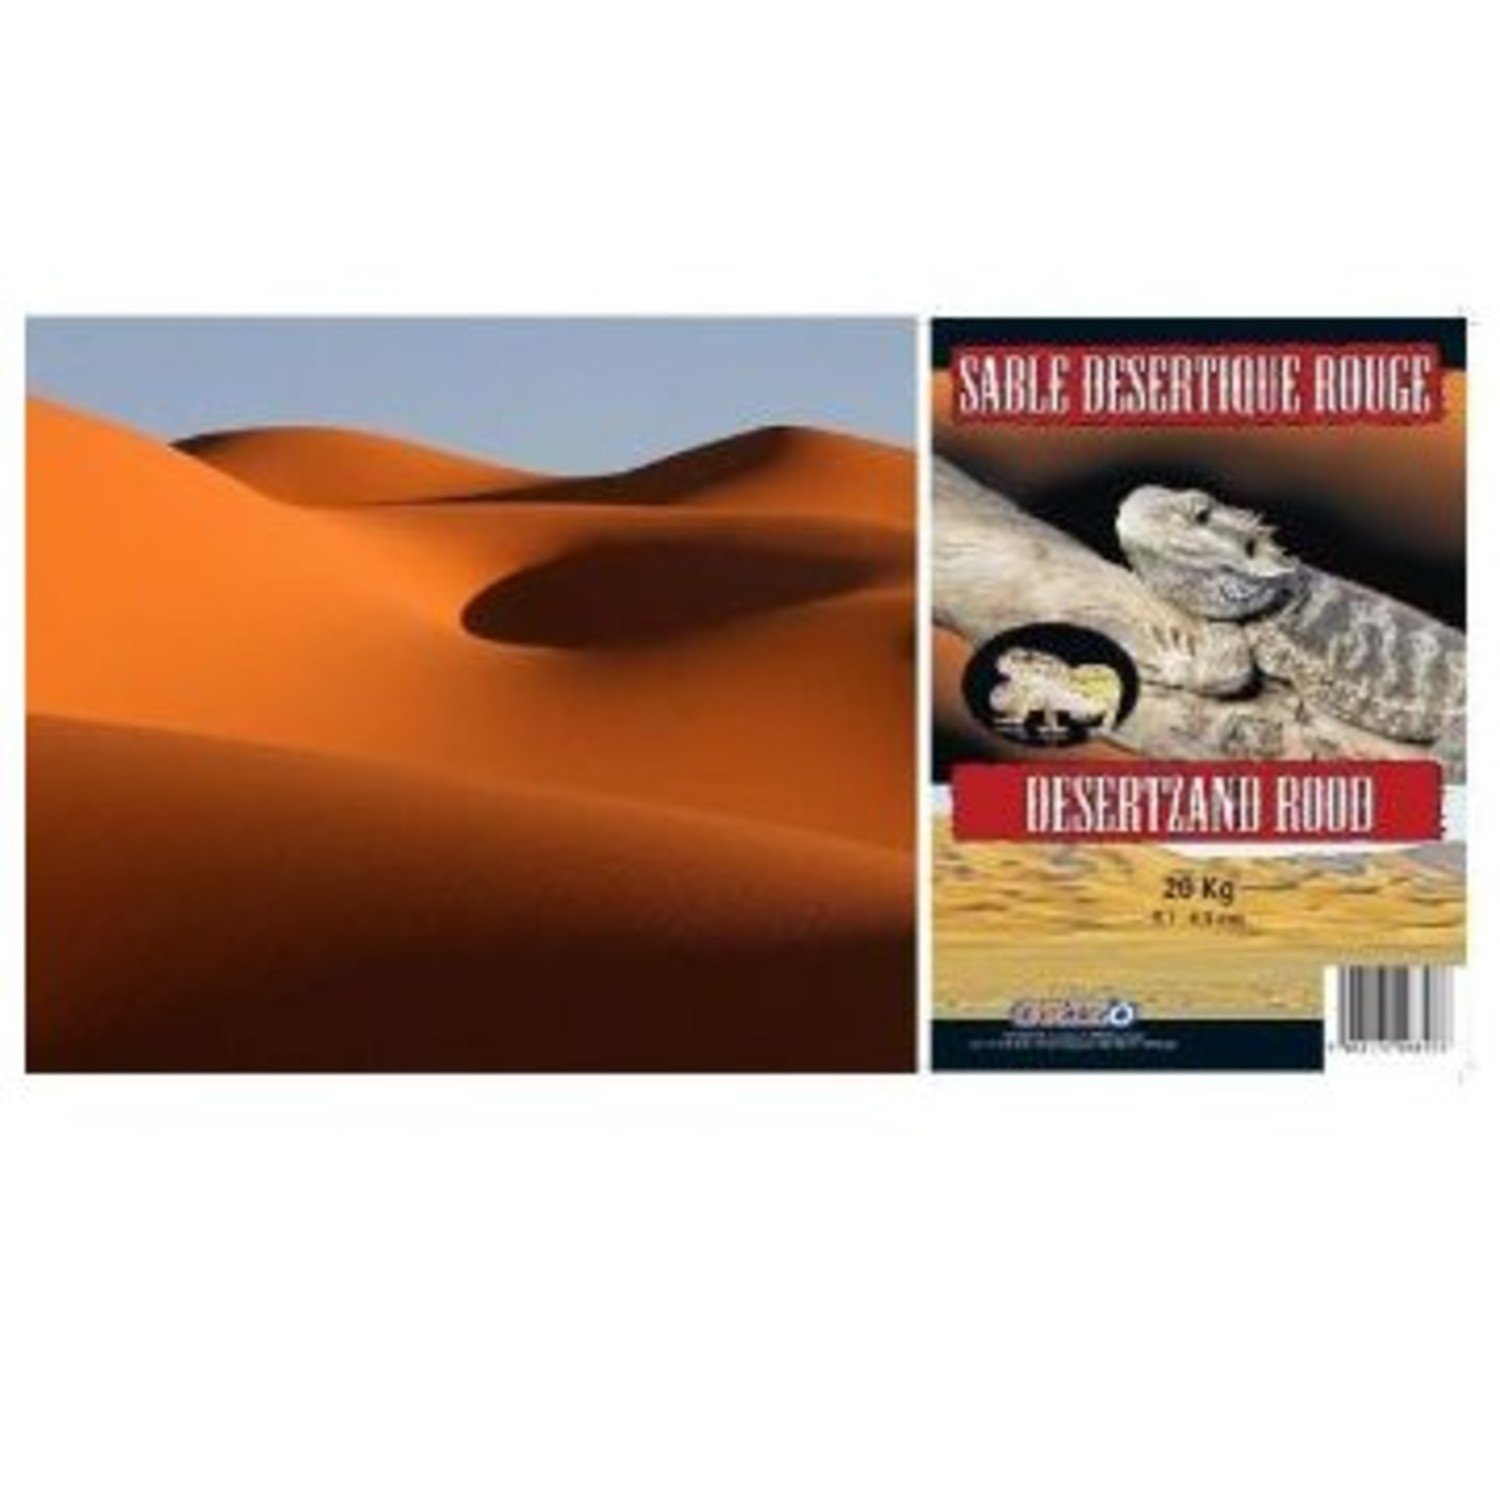 Draad Interpersoonlijk grafisch Woestijnzand Rood 20 KG voor Terrarium - Pets Gifts